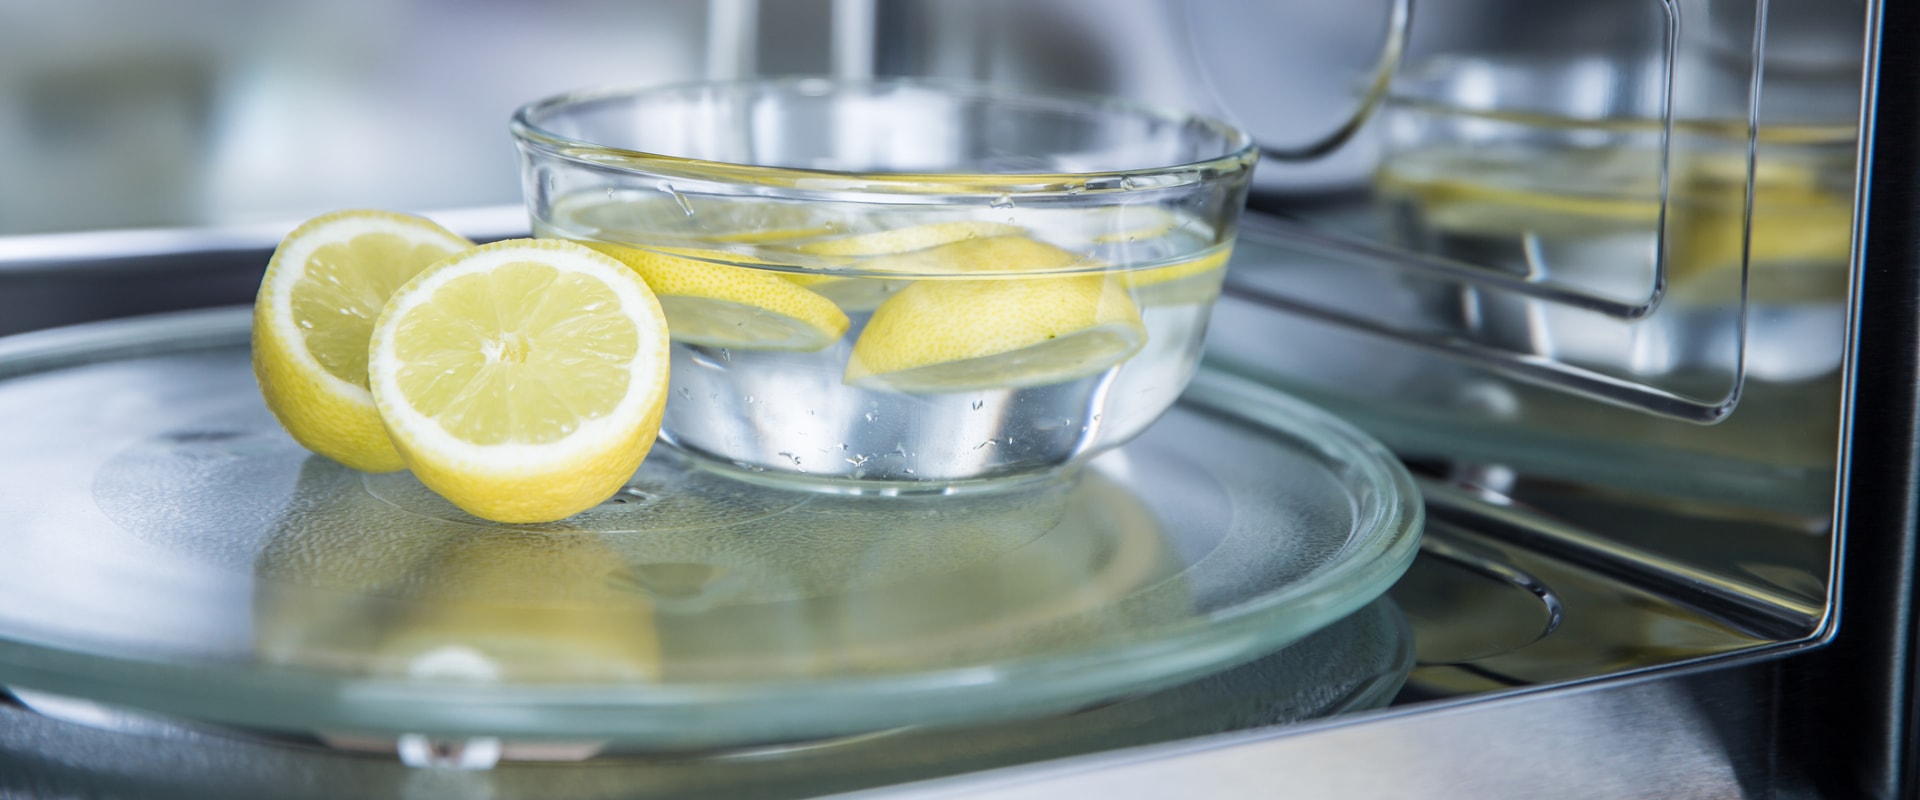 Is lemon or vinegar better for cleaning microwave?